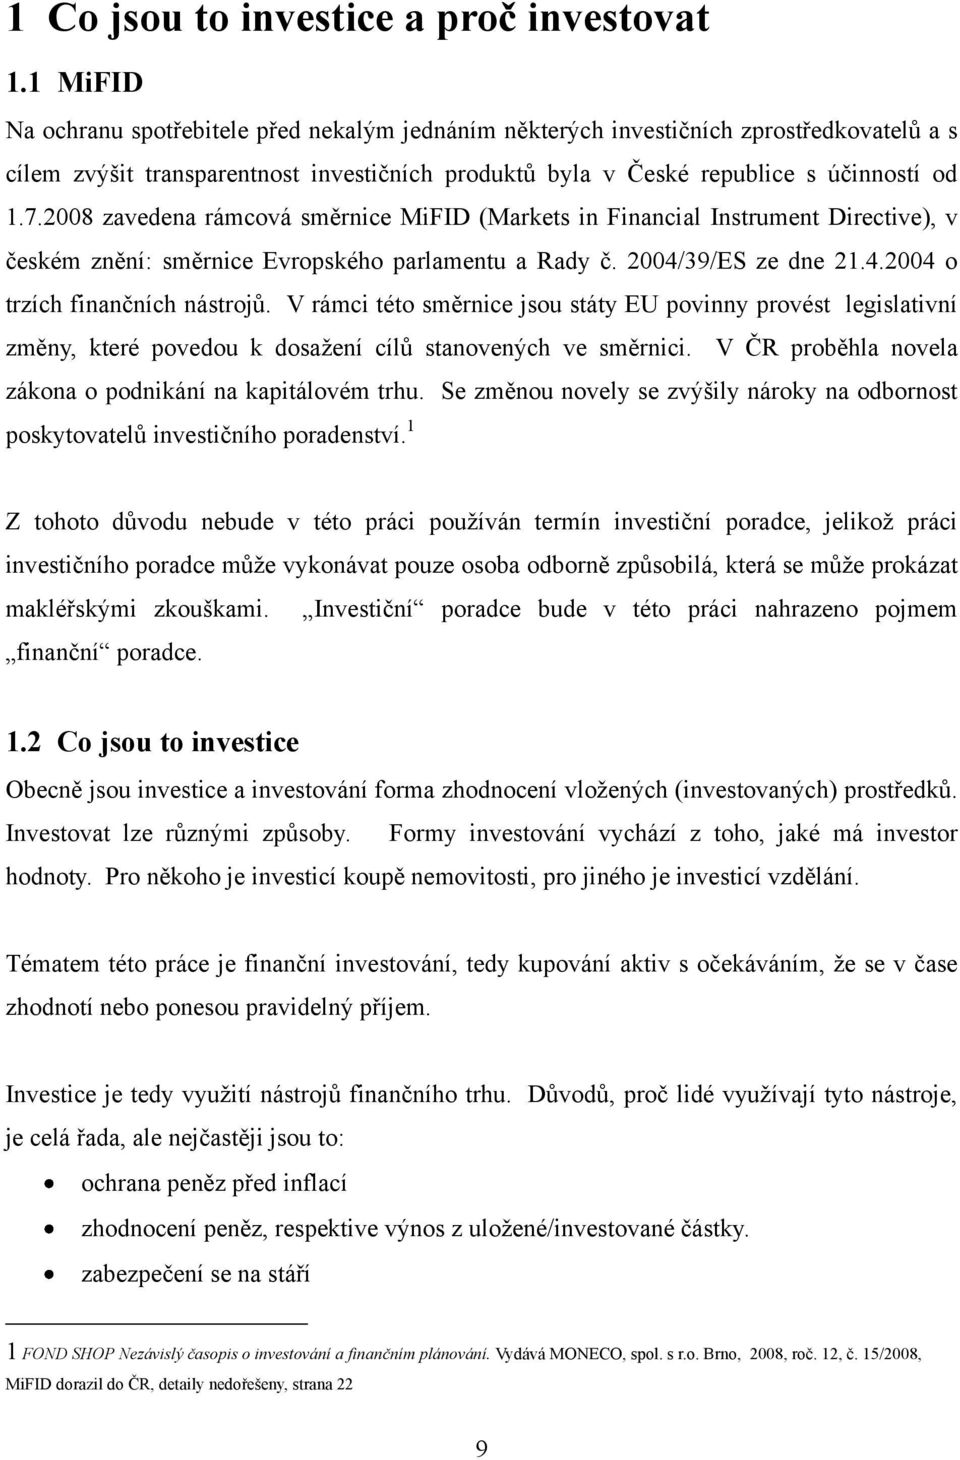 2008 zavedena rámcová směrnice MiFID (Markets in Financial Instrument Directive), v českém znění: směrnice Evropského parlamentu a Rady č. 2004/39/ES ze dne 21.4.2004 o trzích finančních nástrojů.